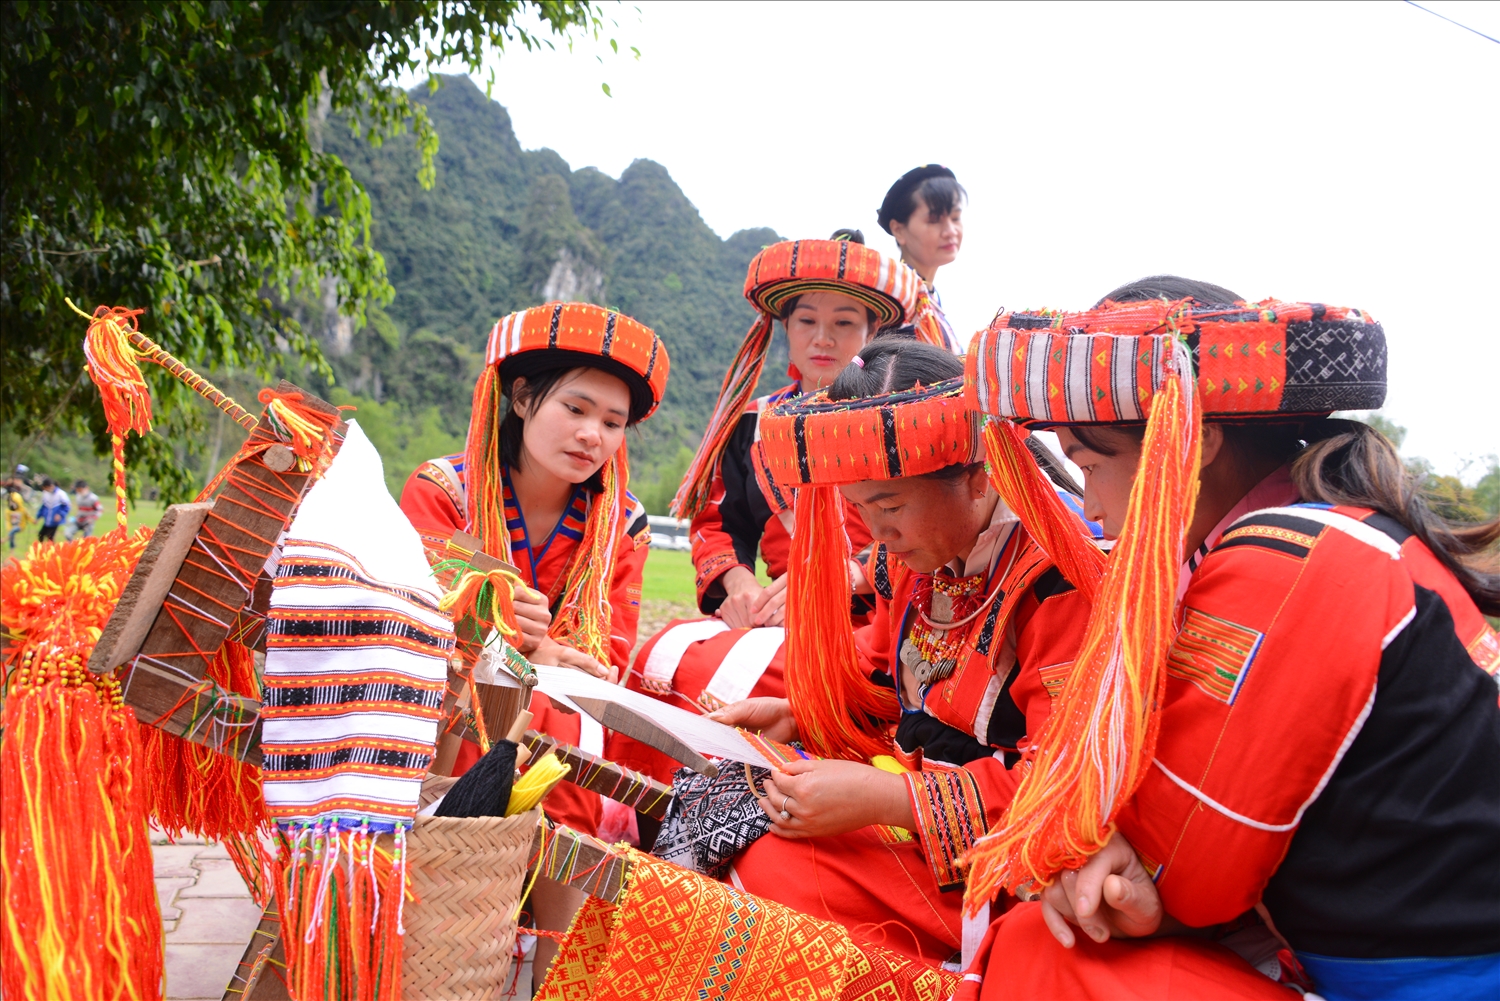 Trang phục thổ cẩm truyền thống của dân tộc Pà Then mang màu sắc sặc sỡ